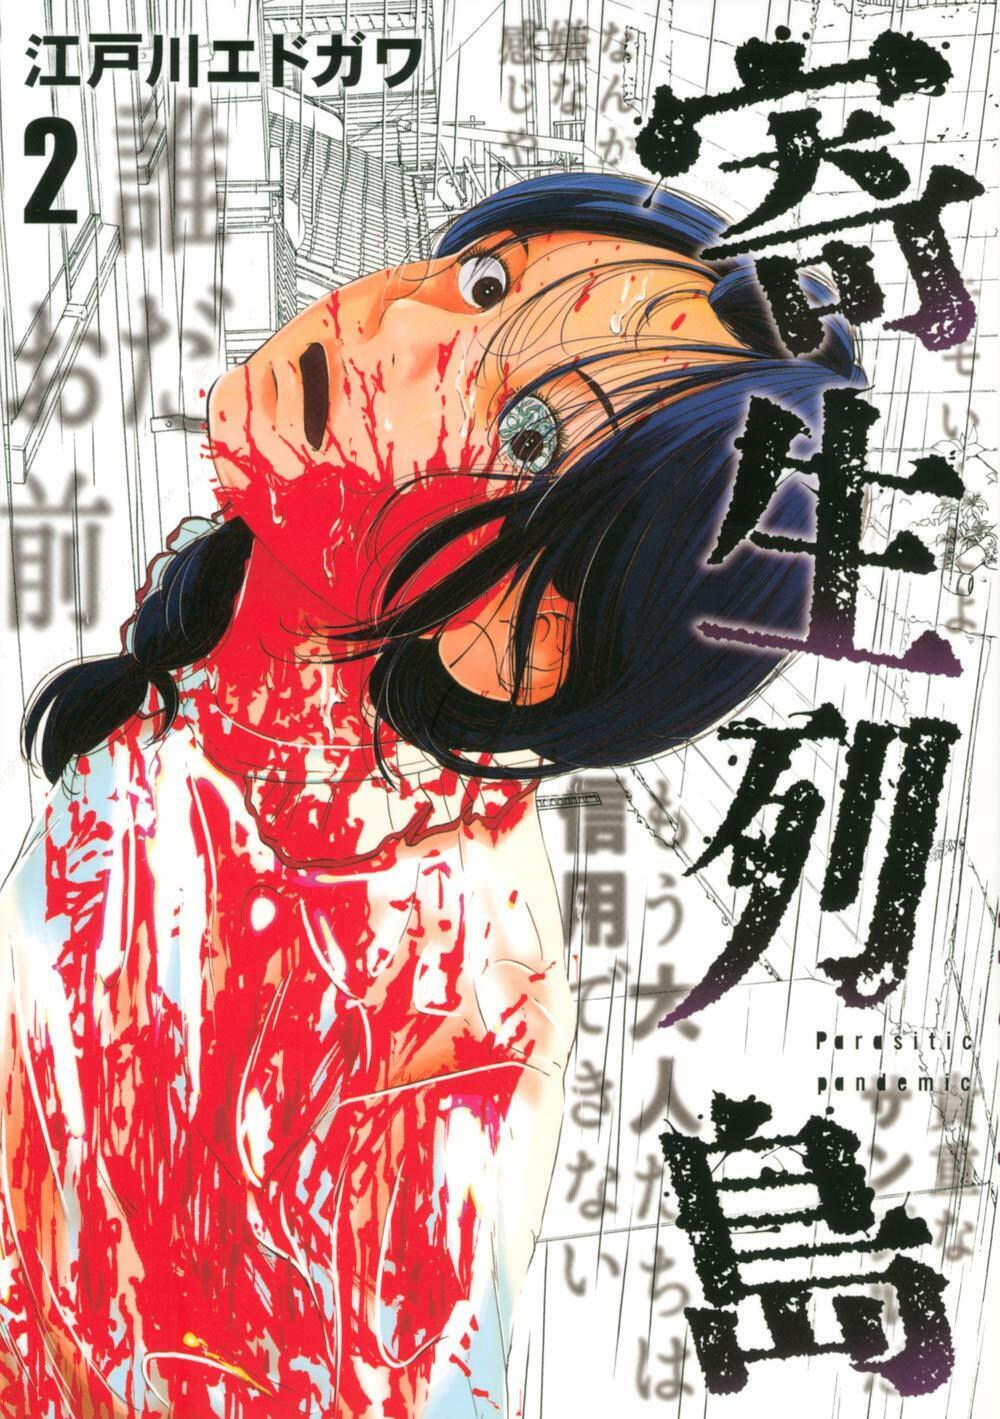 Parasitic archipelago Vol.2 Manga JP Edition Edogawa Edgawa